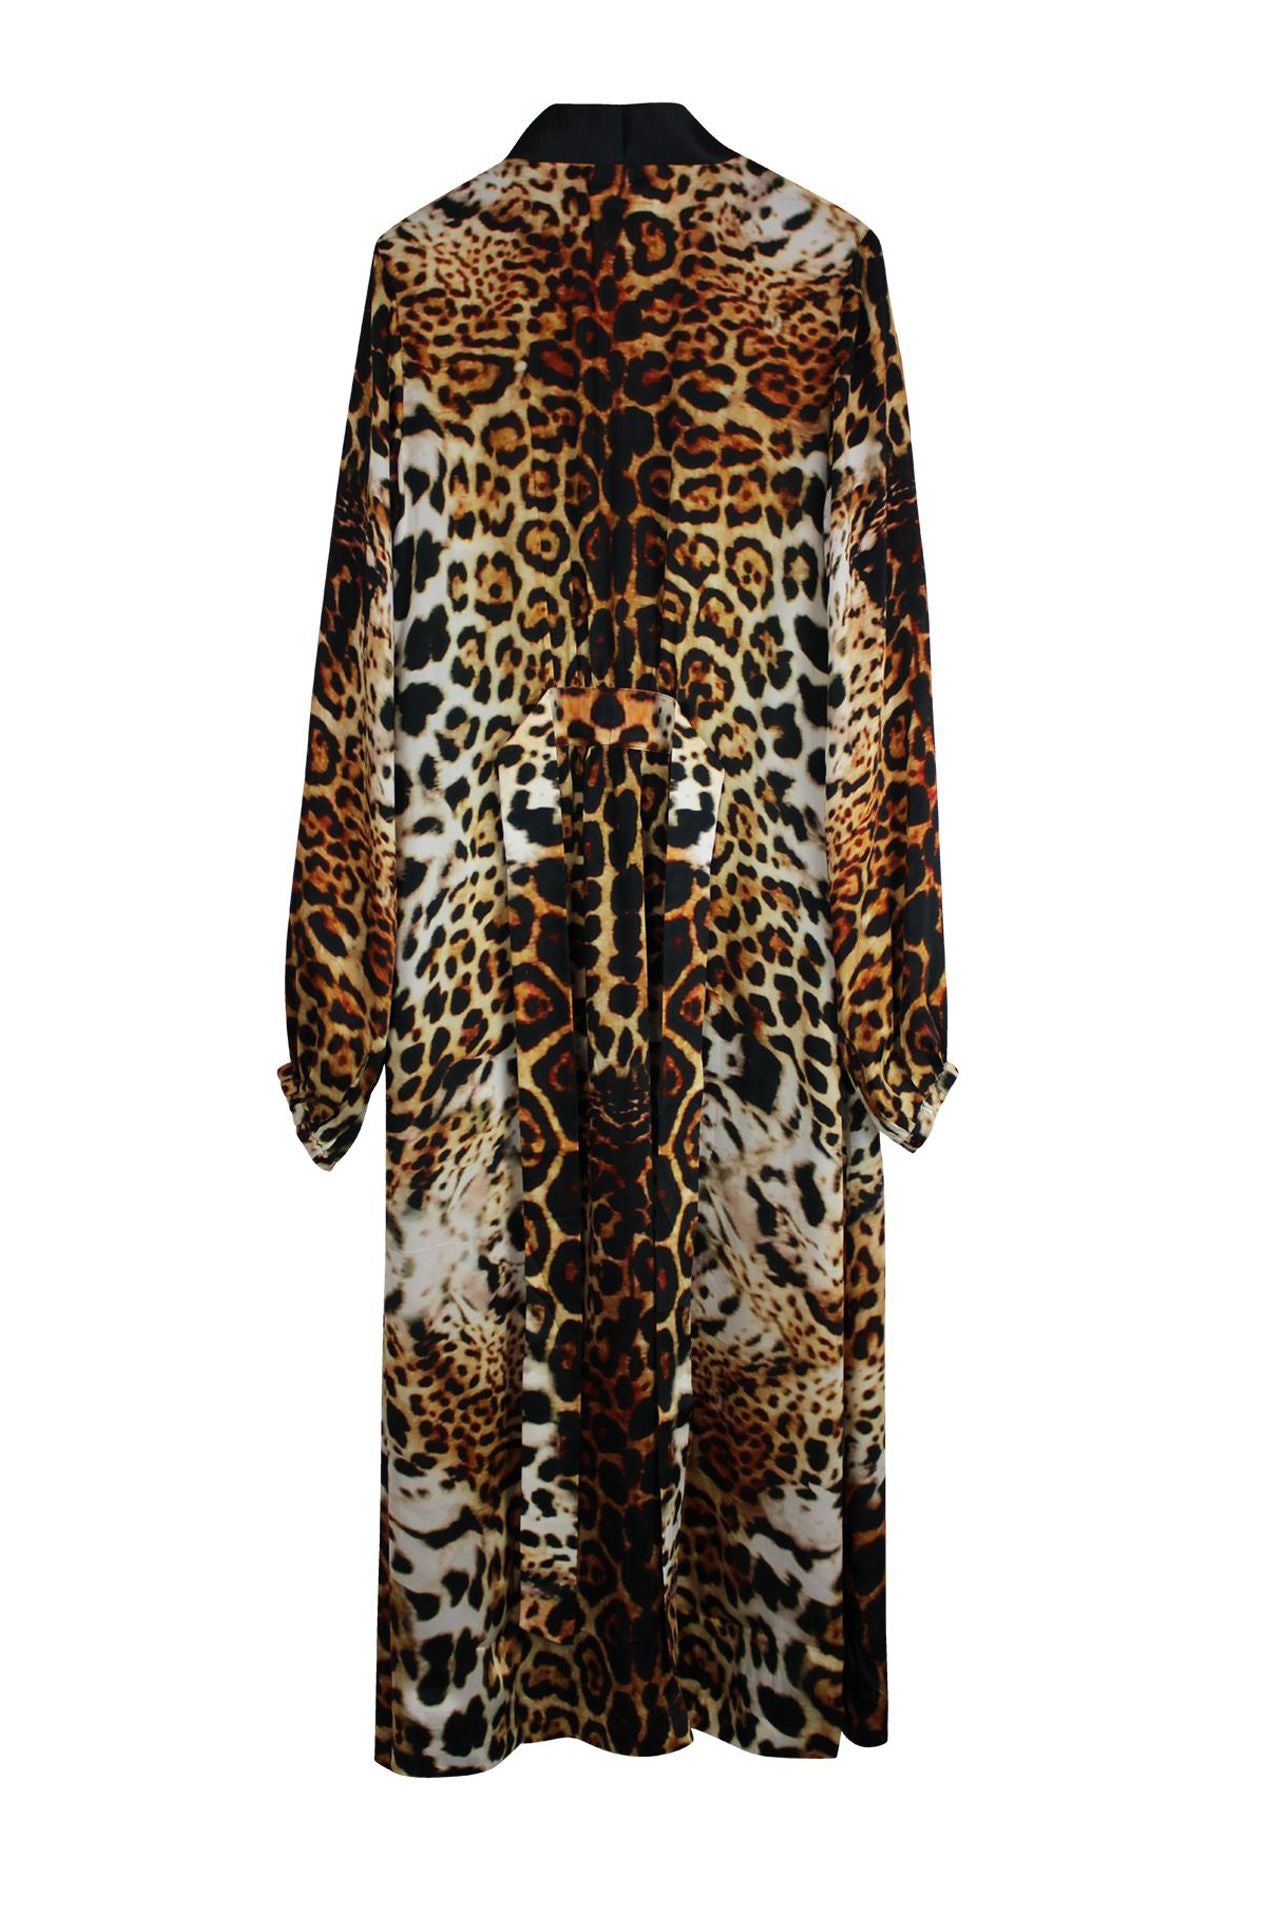 Jaguar Print Black Collar Robe